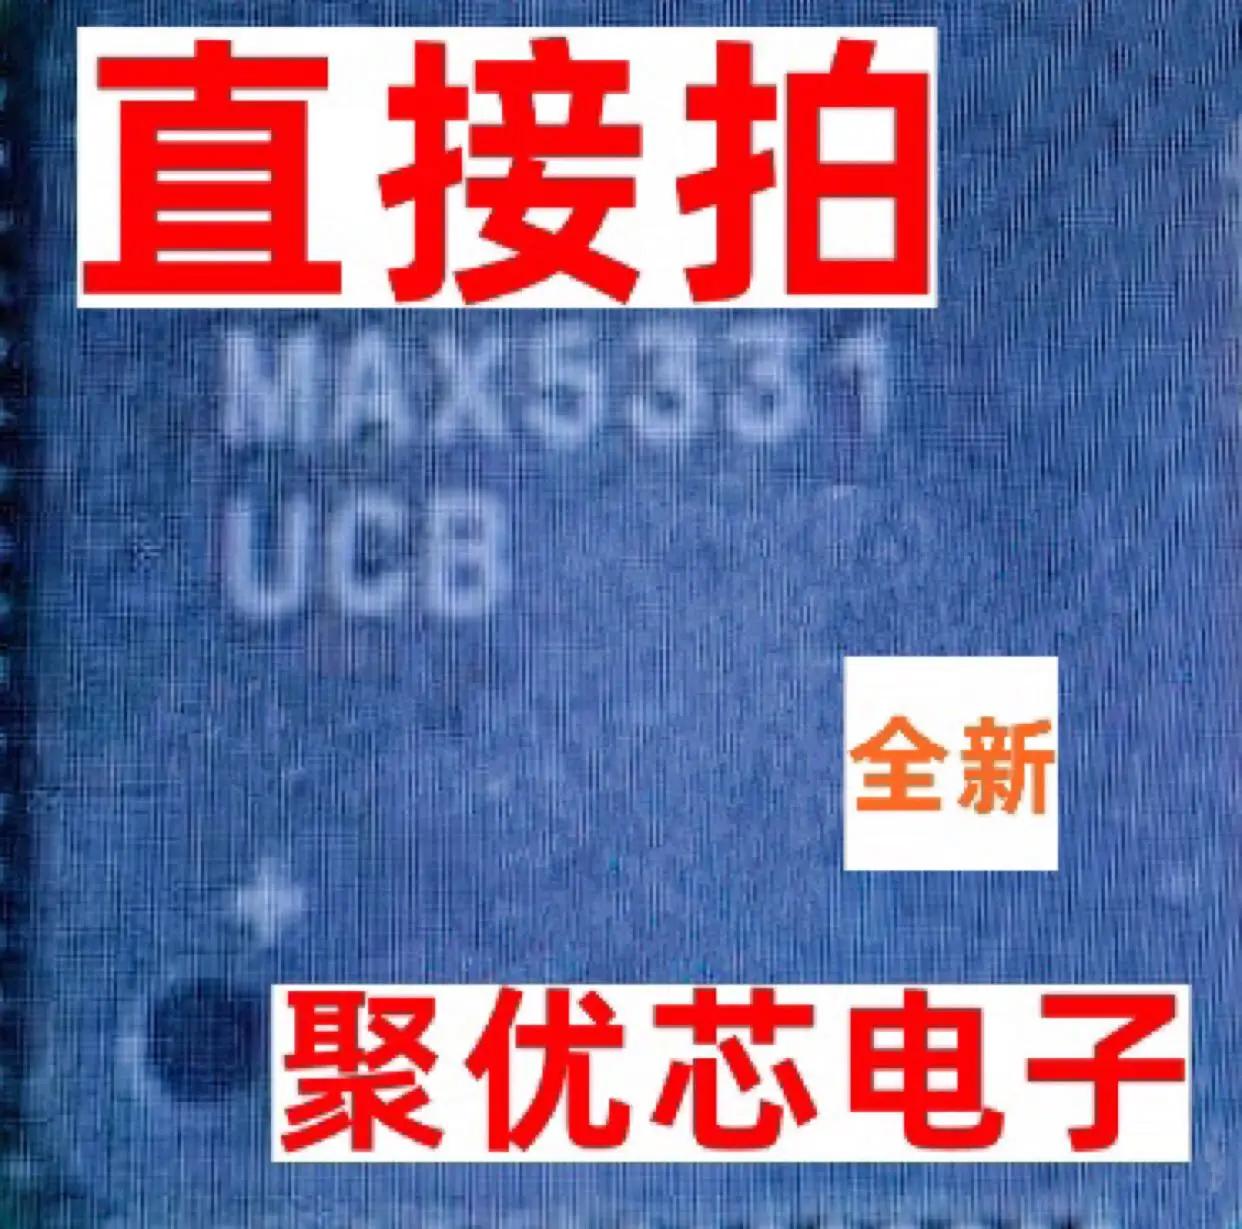 MAX5331UCB, MAX5331, QFP64